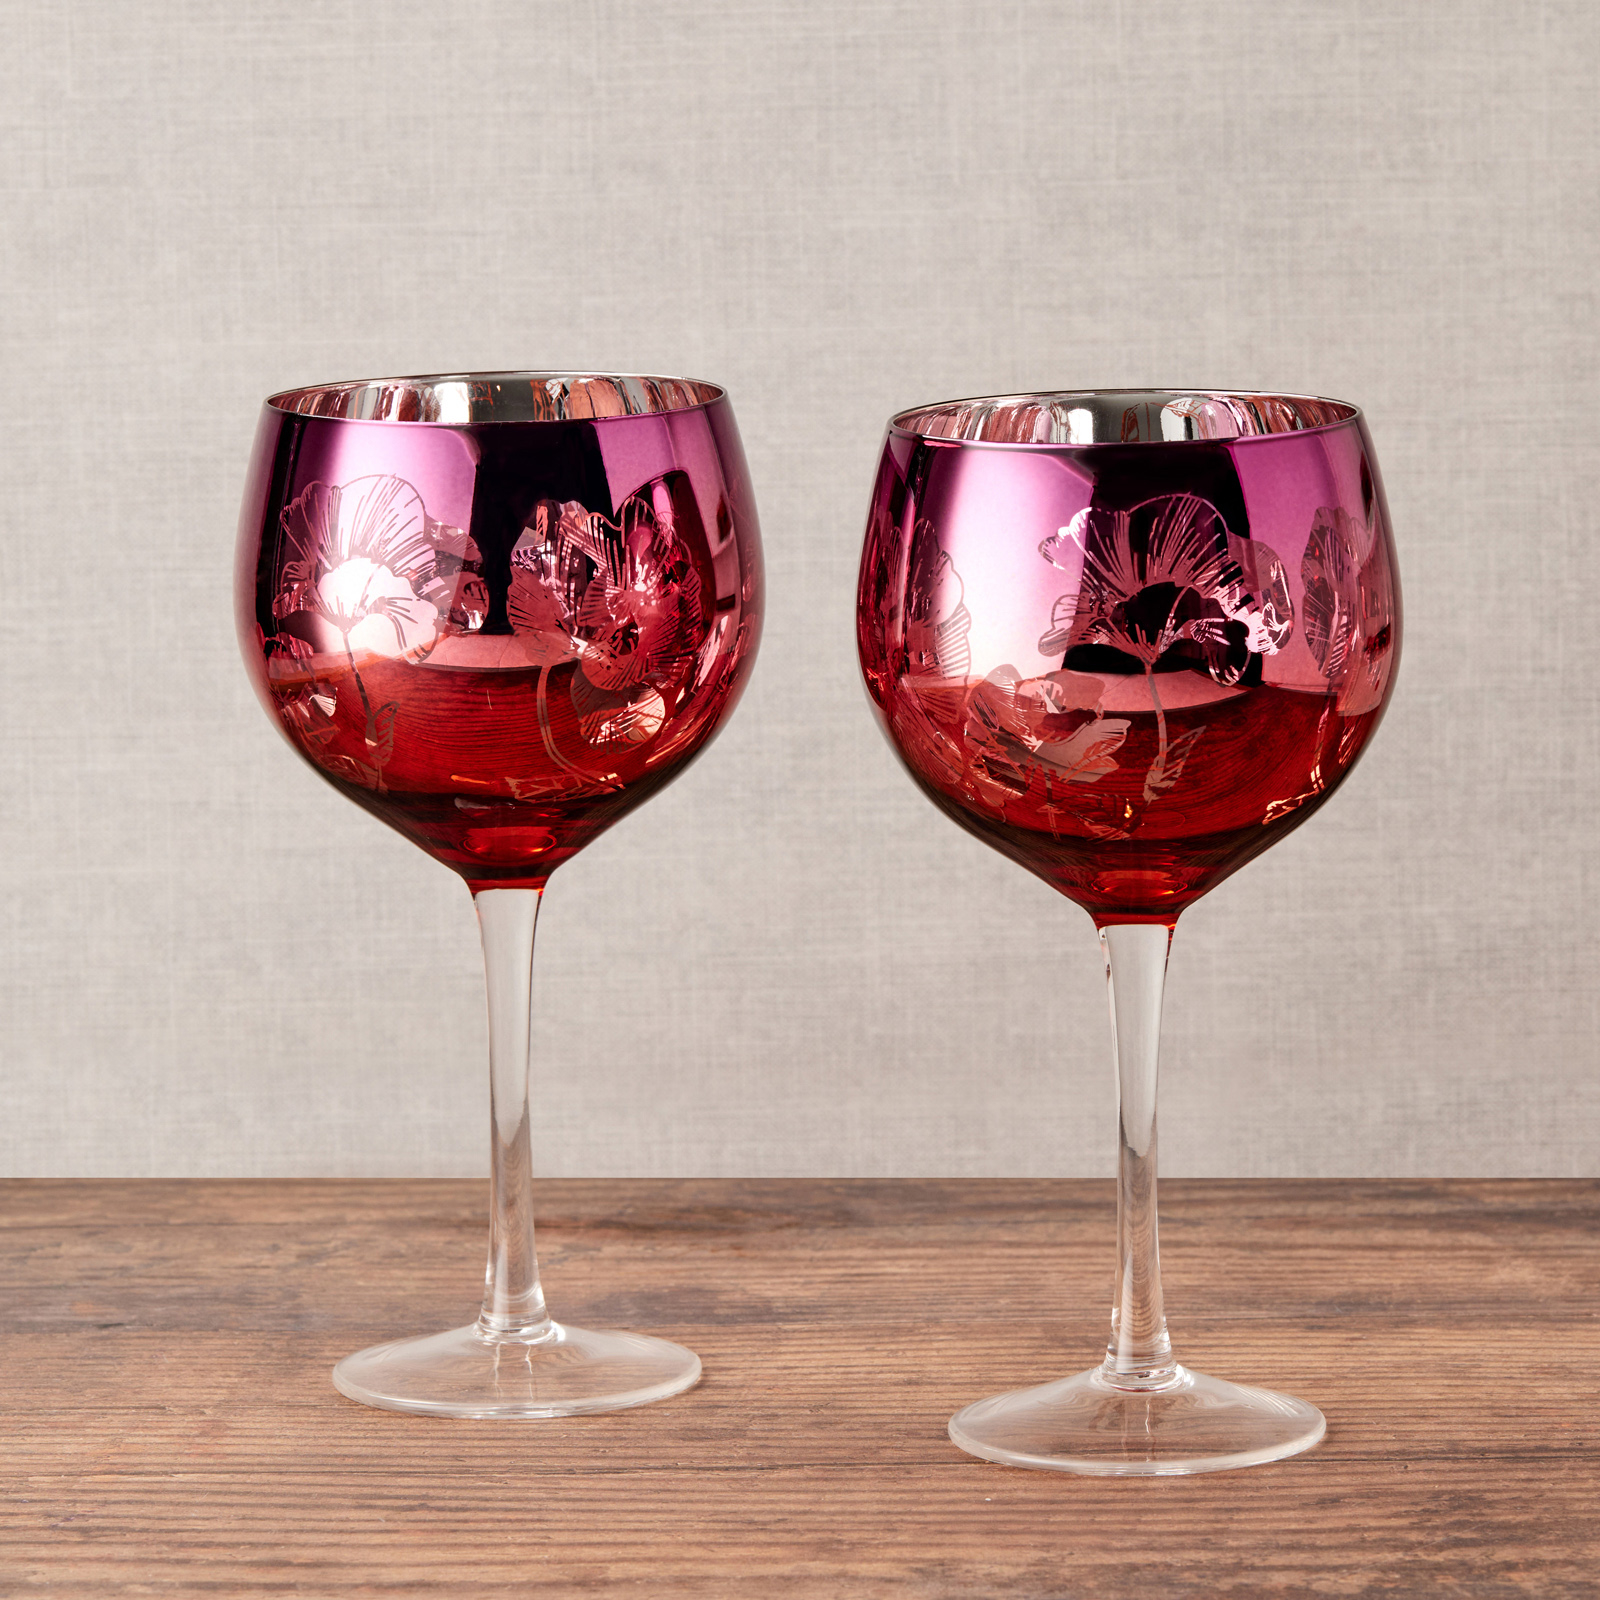 Visuel deLot de 2 verres à gin by Artland - Bloom Un décor magnifique avec un design détaillé rose, orange et argent, ces verres à gin exclusif comportent un bouquet de fleurs miroir, le tout sur un grand bol incurvé, et une tige haute pour une élégance ultime